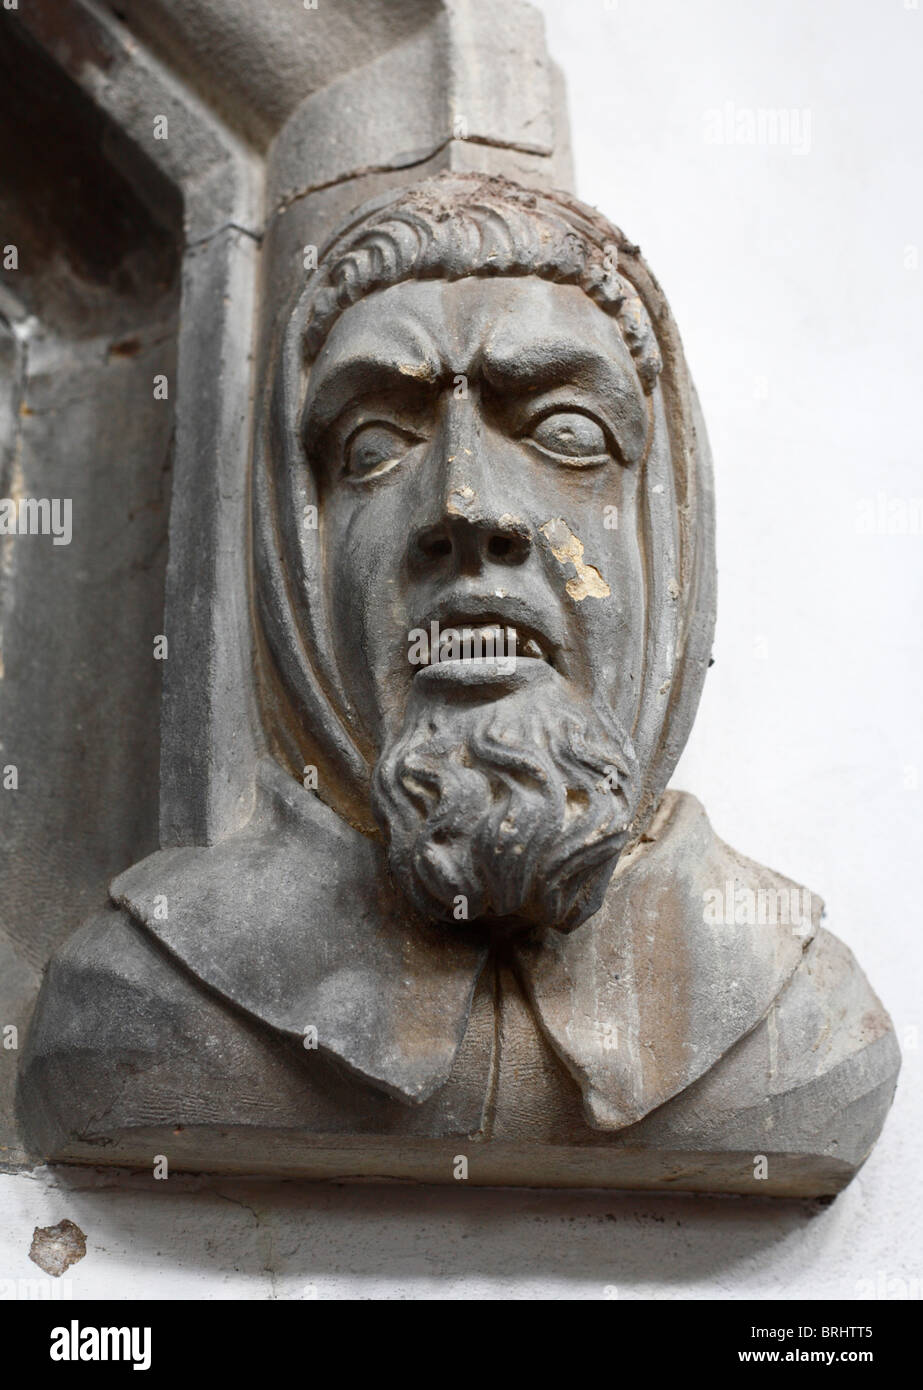 Una cabeza de piedra tallada en la capilla de San Nicolás, en King's Lynn, Norfolk, Inglaterra, con un angustiado expresssion. Foto de stock